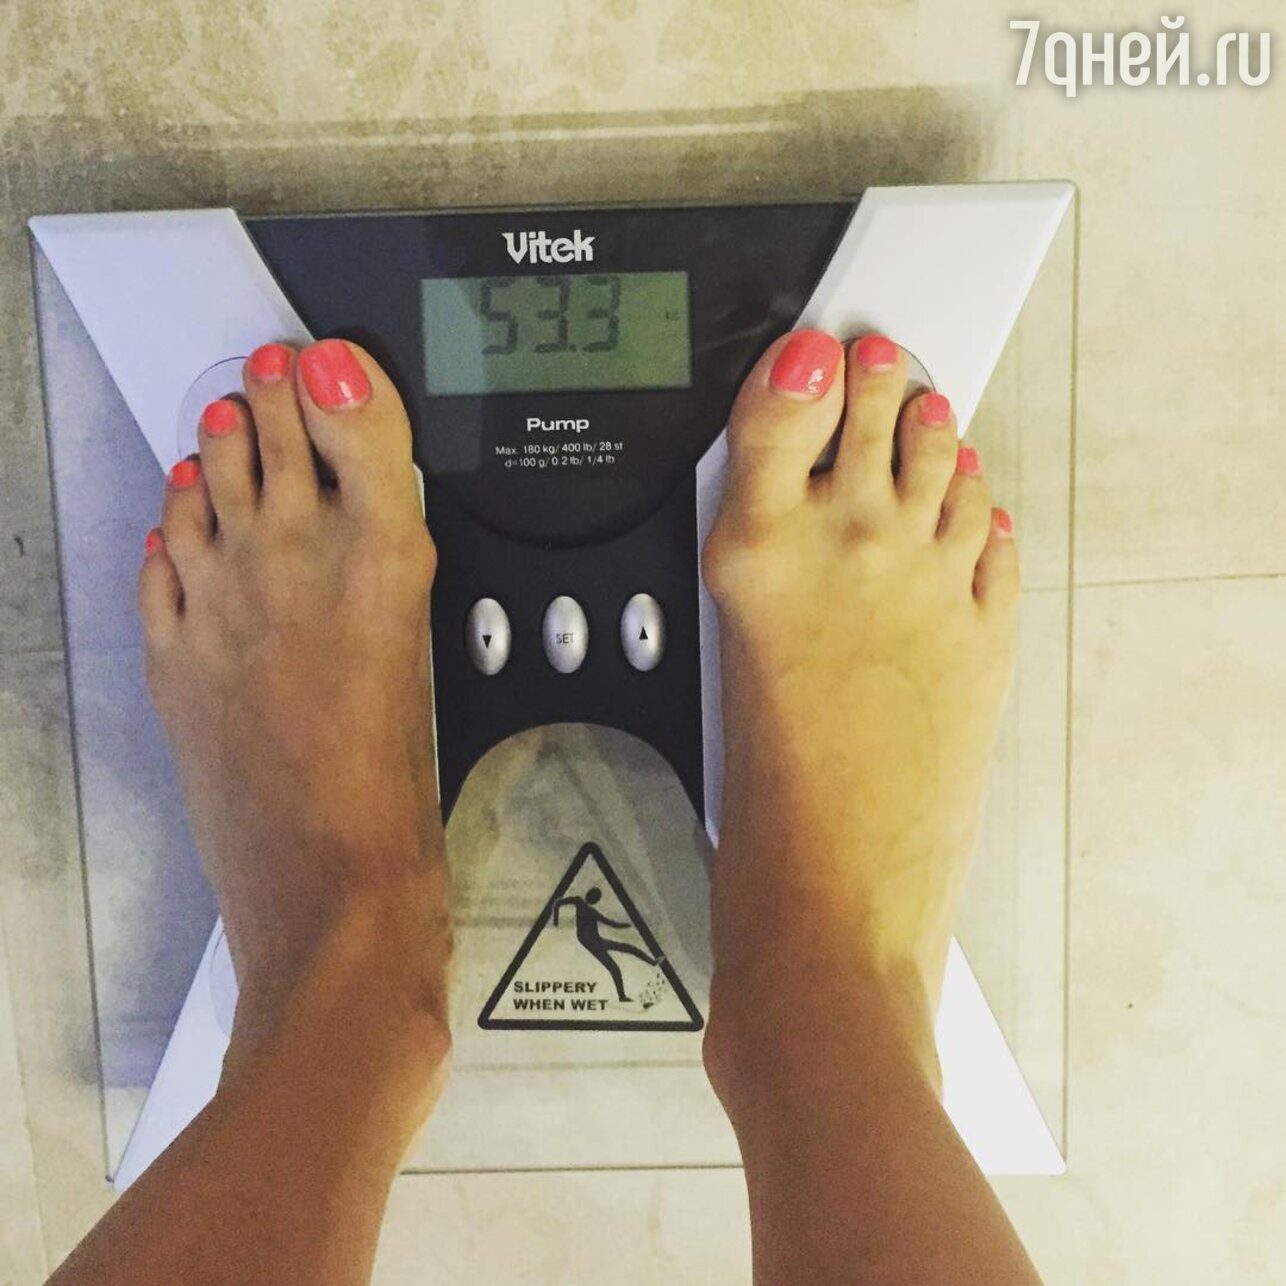 Наталья Подольская похвасталась результатами диеты